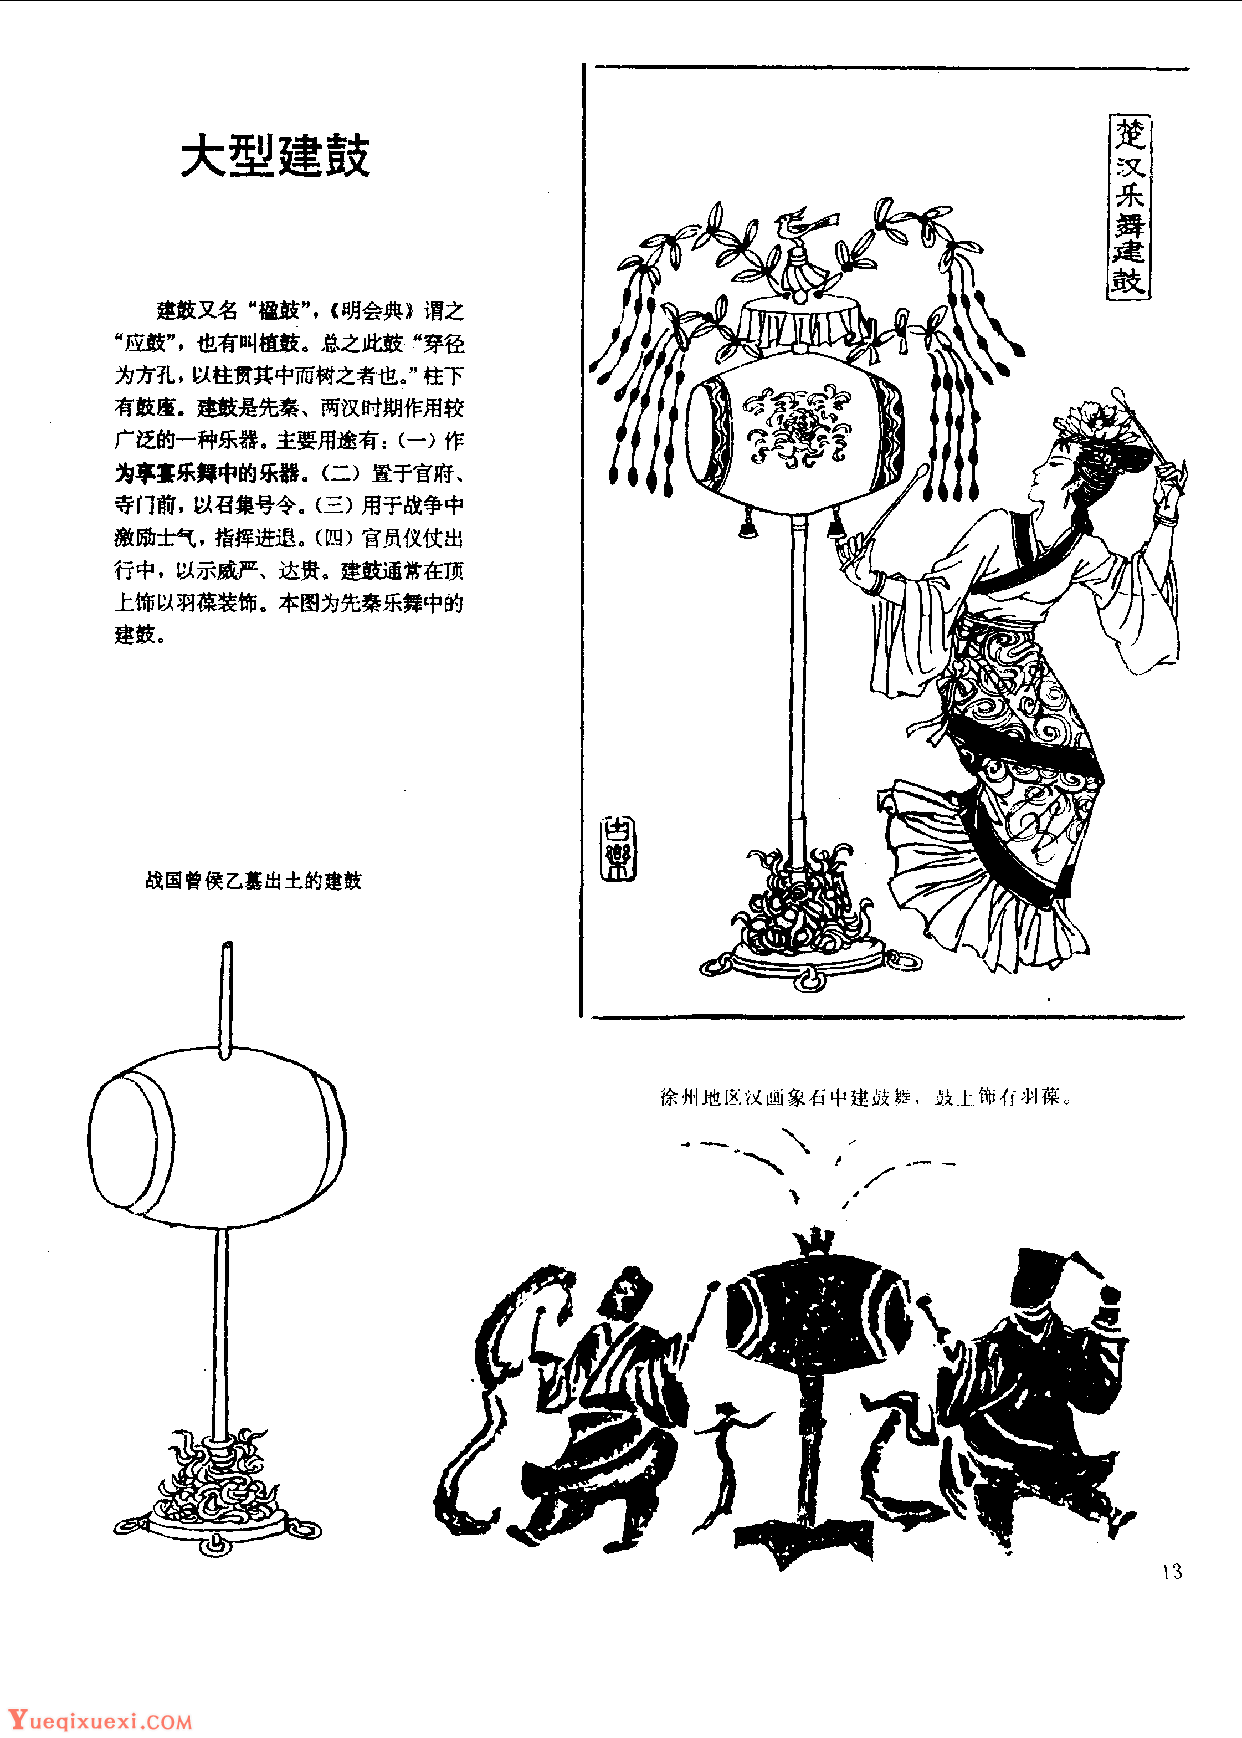 中国古代乐器《大型建鼓》